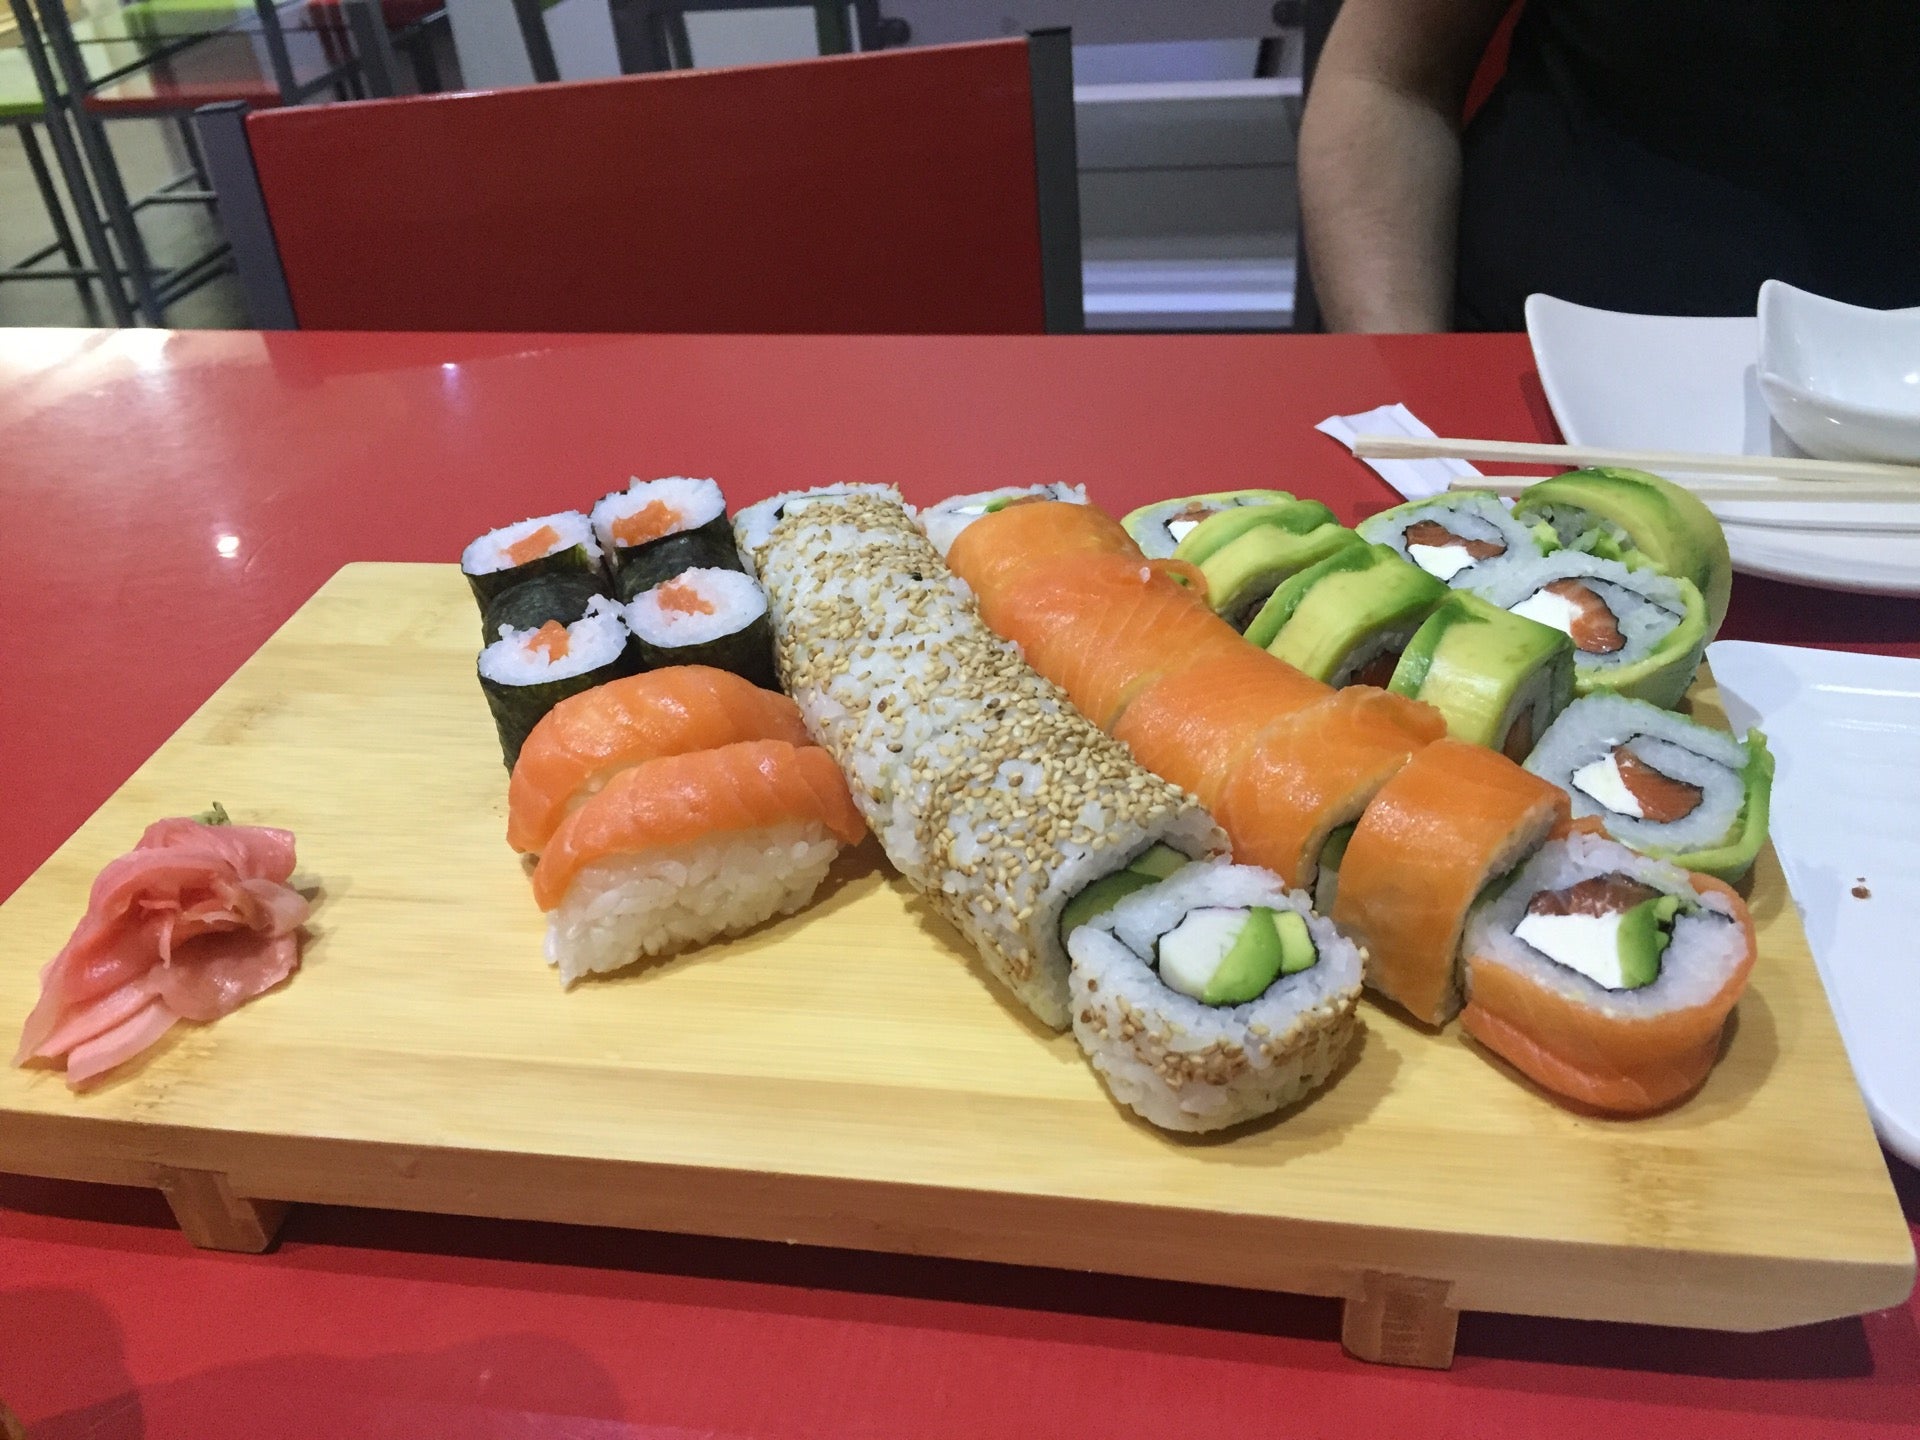 Sushi Centro